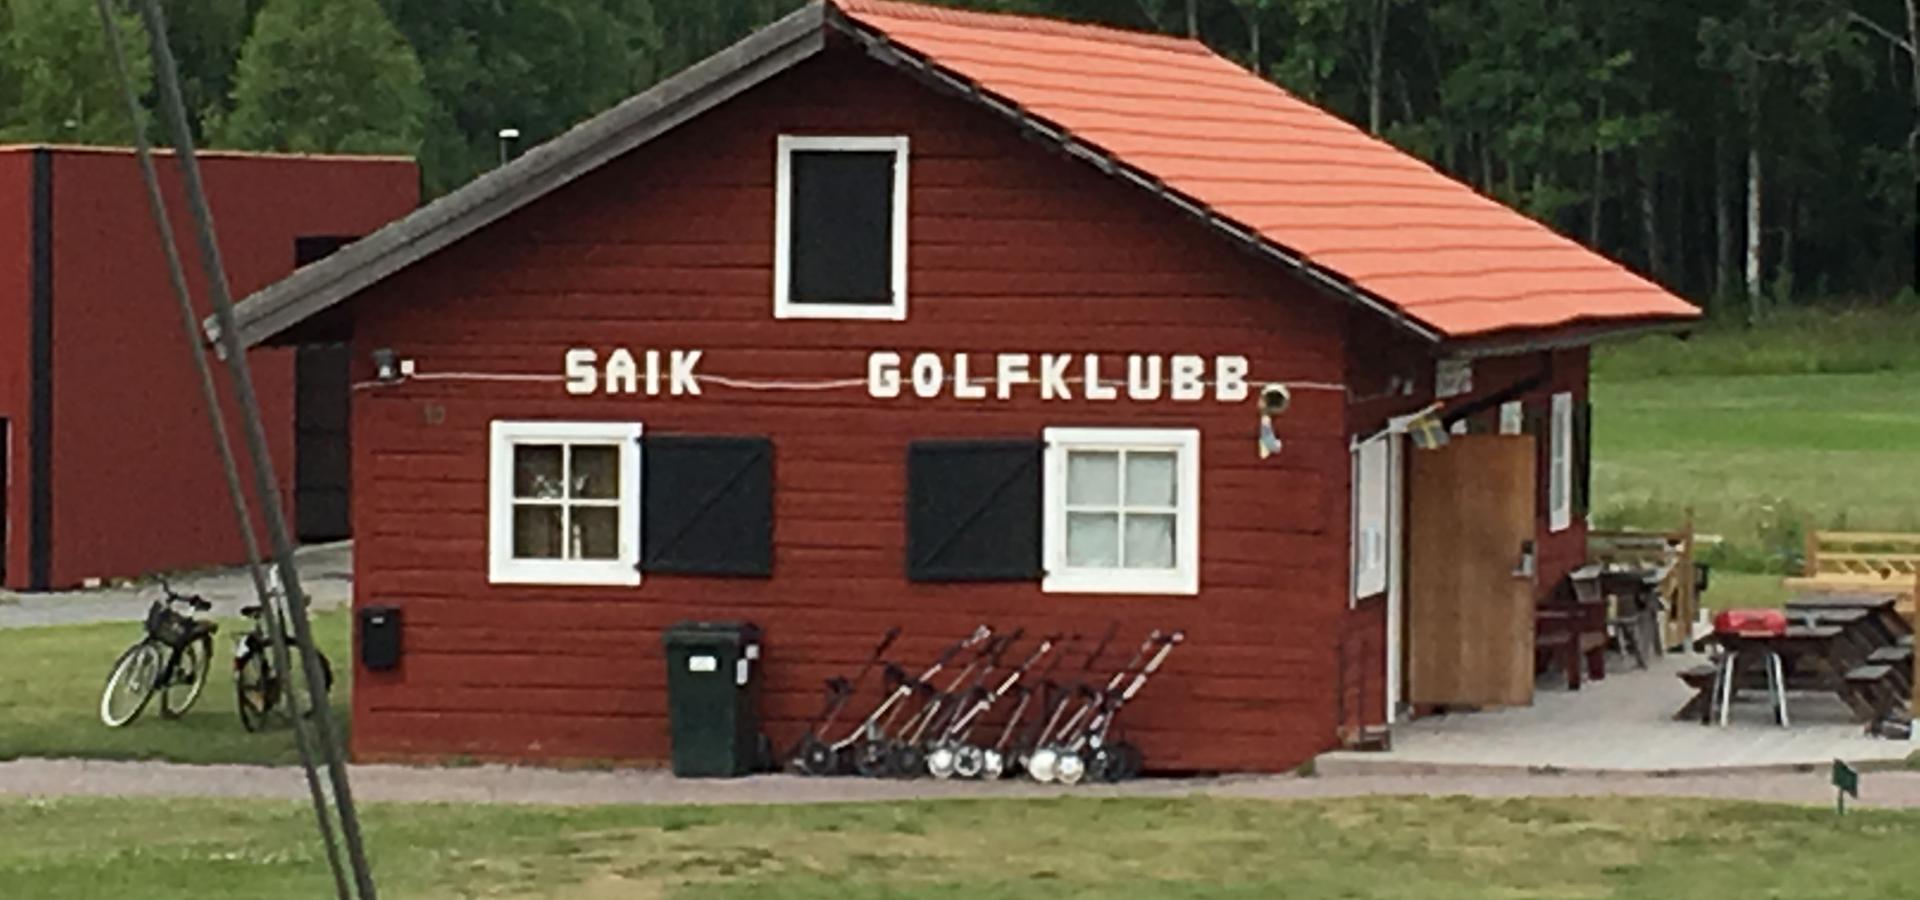 SAIK Golfklubb